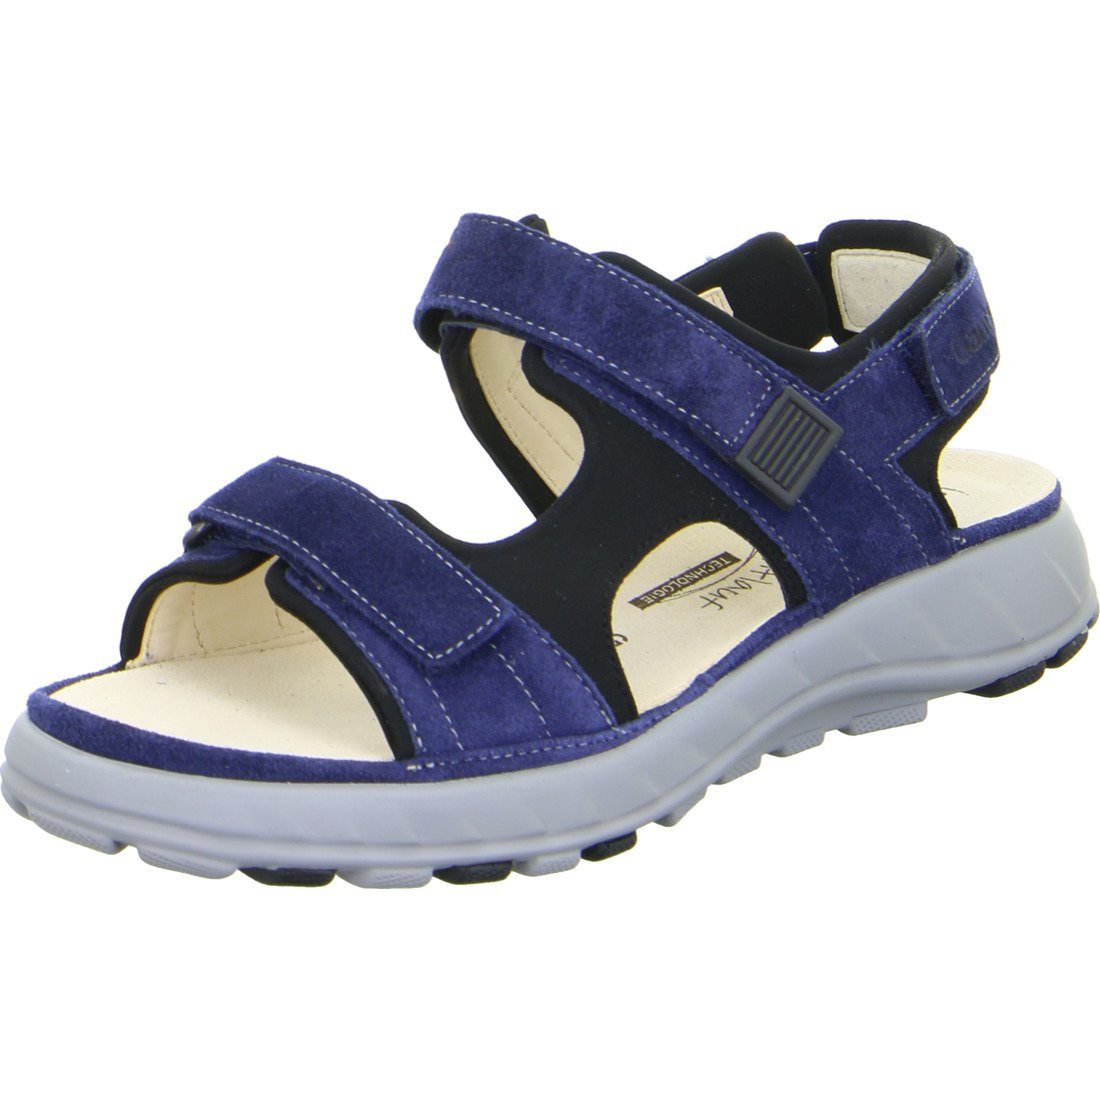 Ganter Ganter blau Schuhe, Sandalette Velours Geva Damen Sandalette 048814 